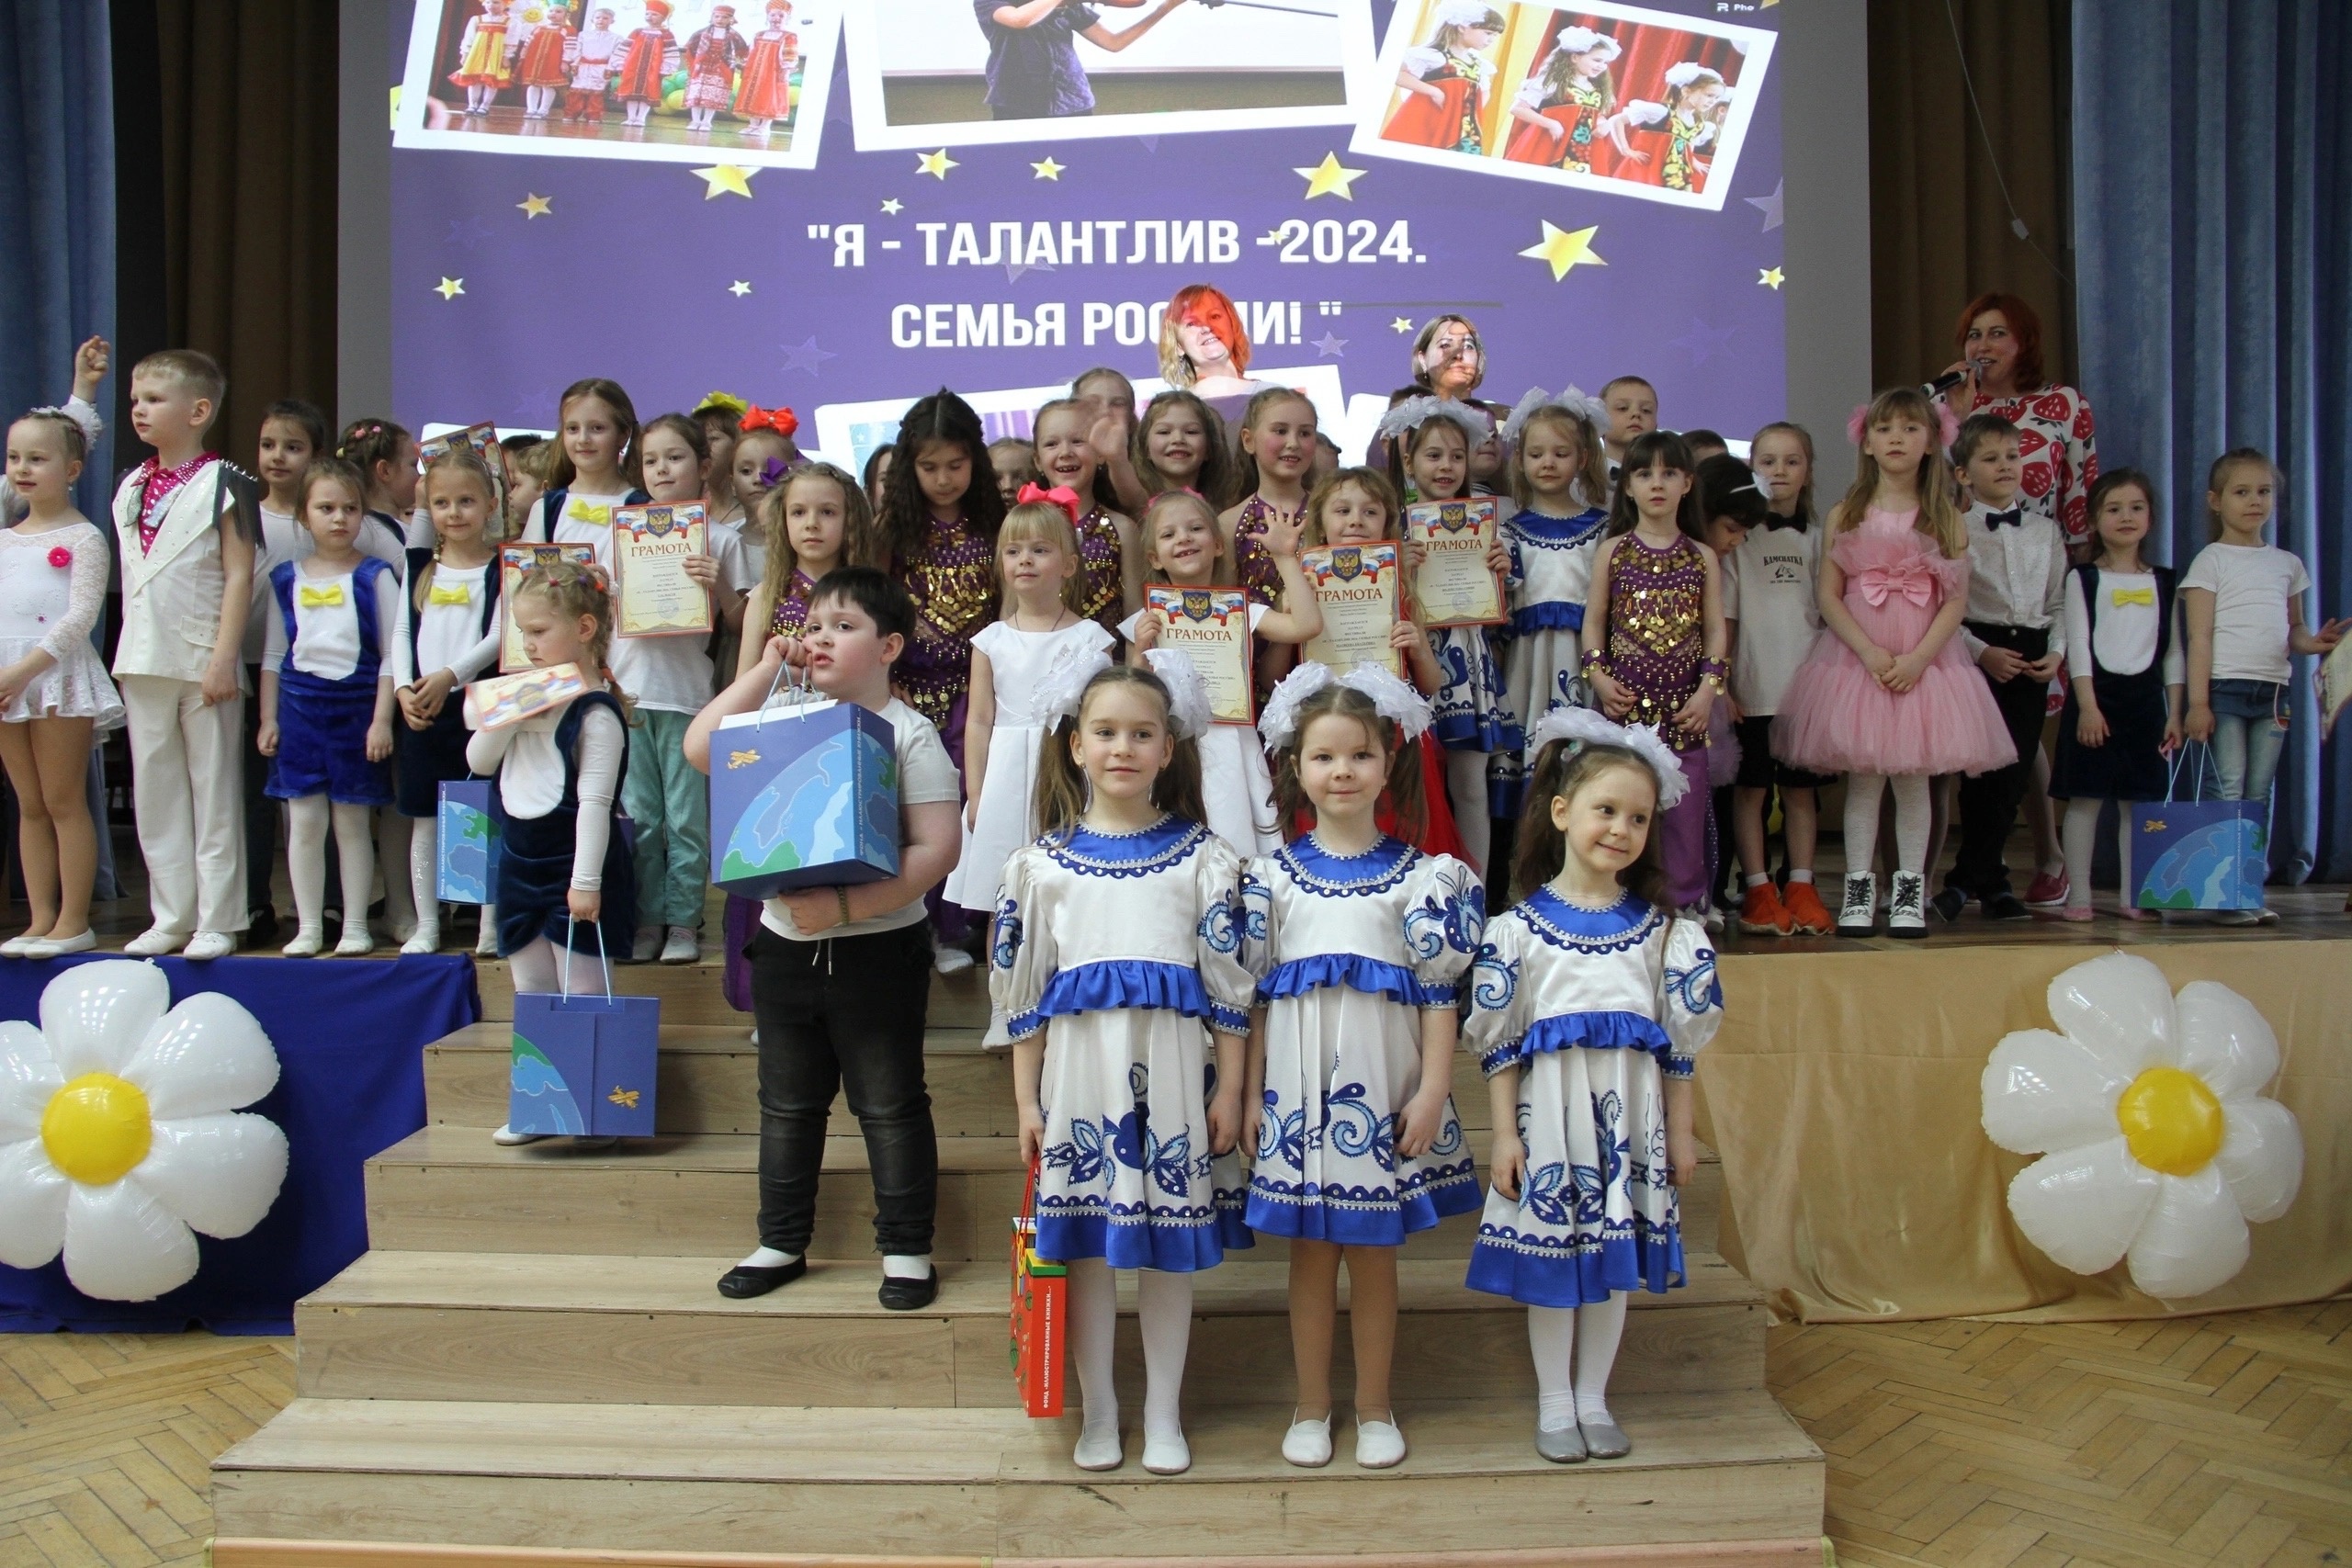 Гала-концерт фестиваля прошел в школе №1569. Фото: страница учреждения в социальных сетях